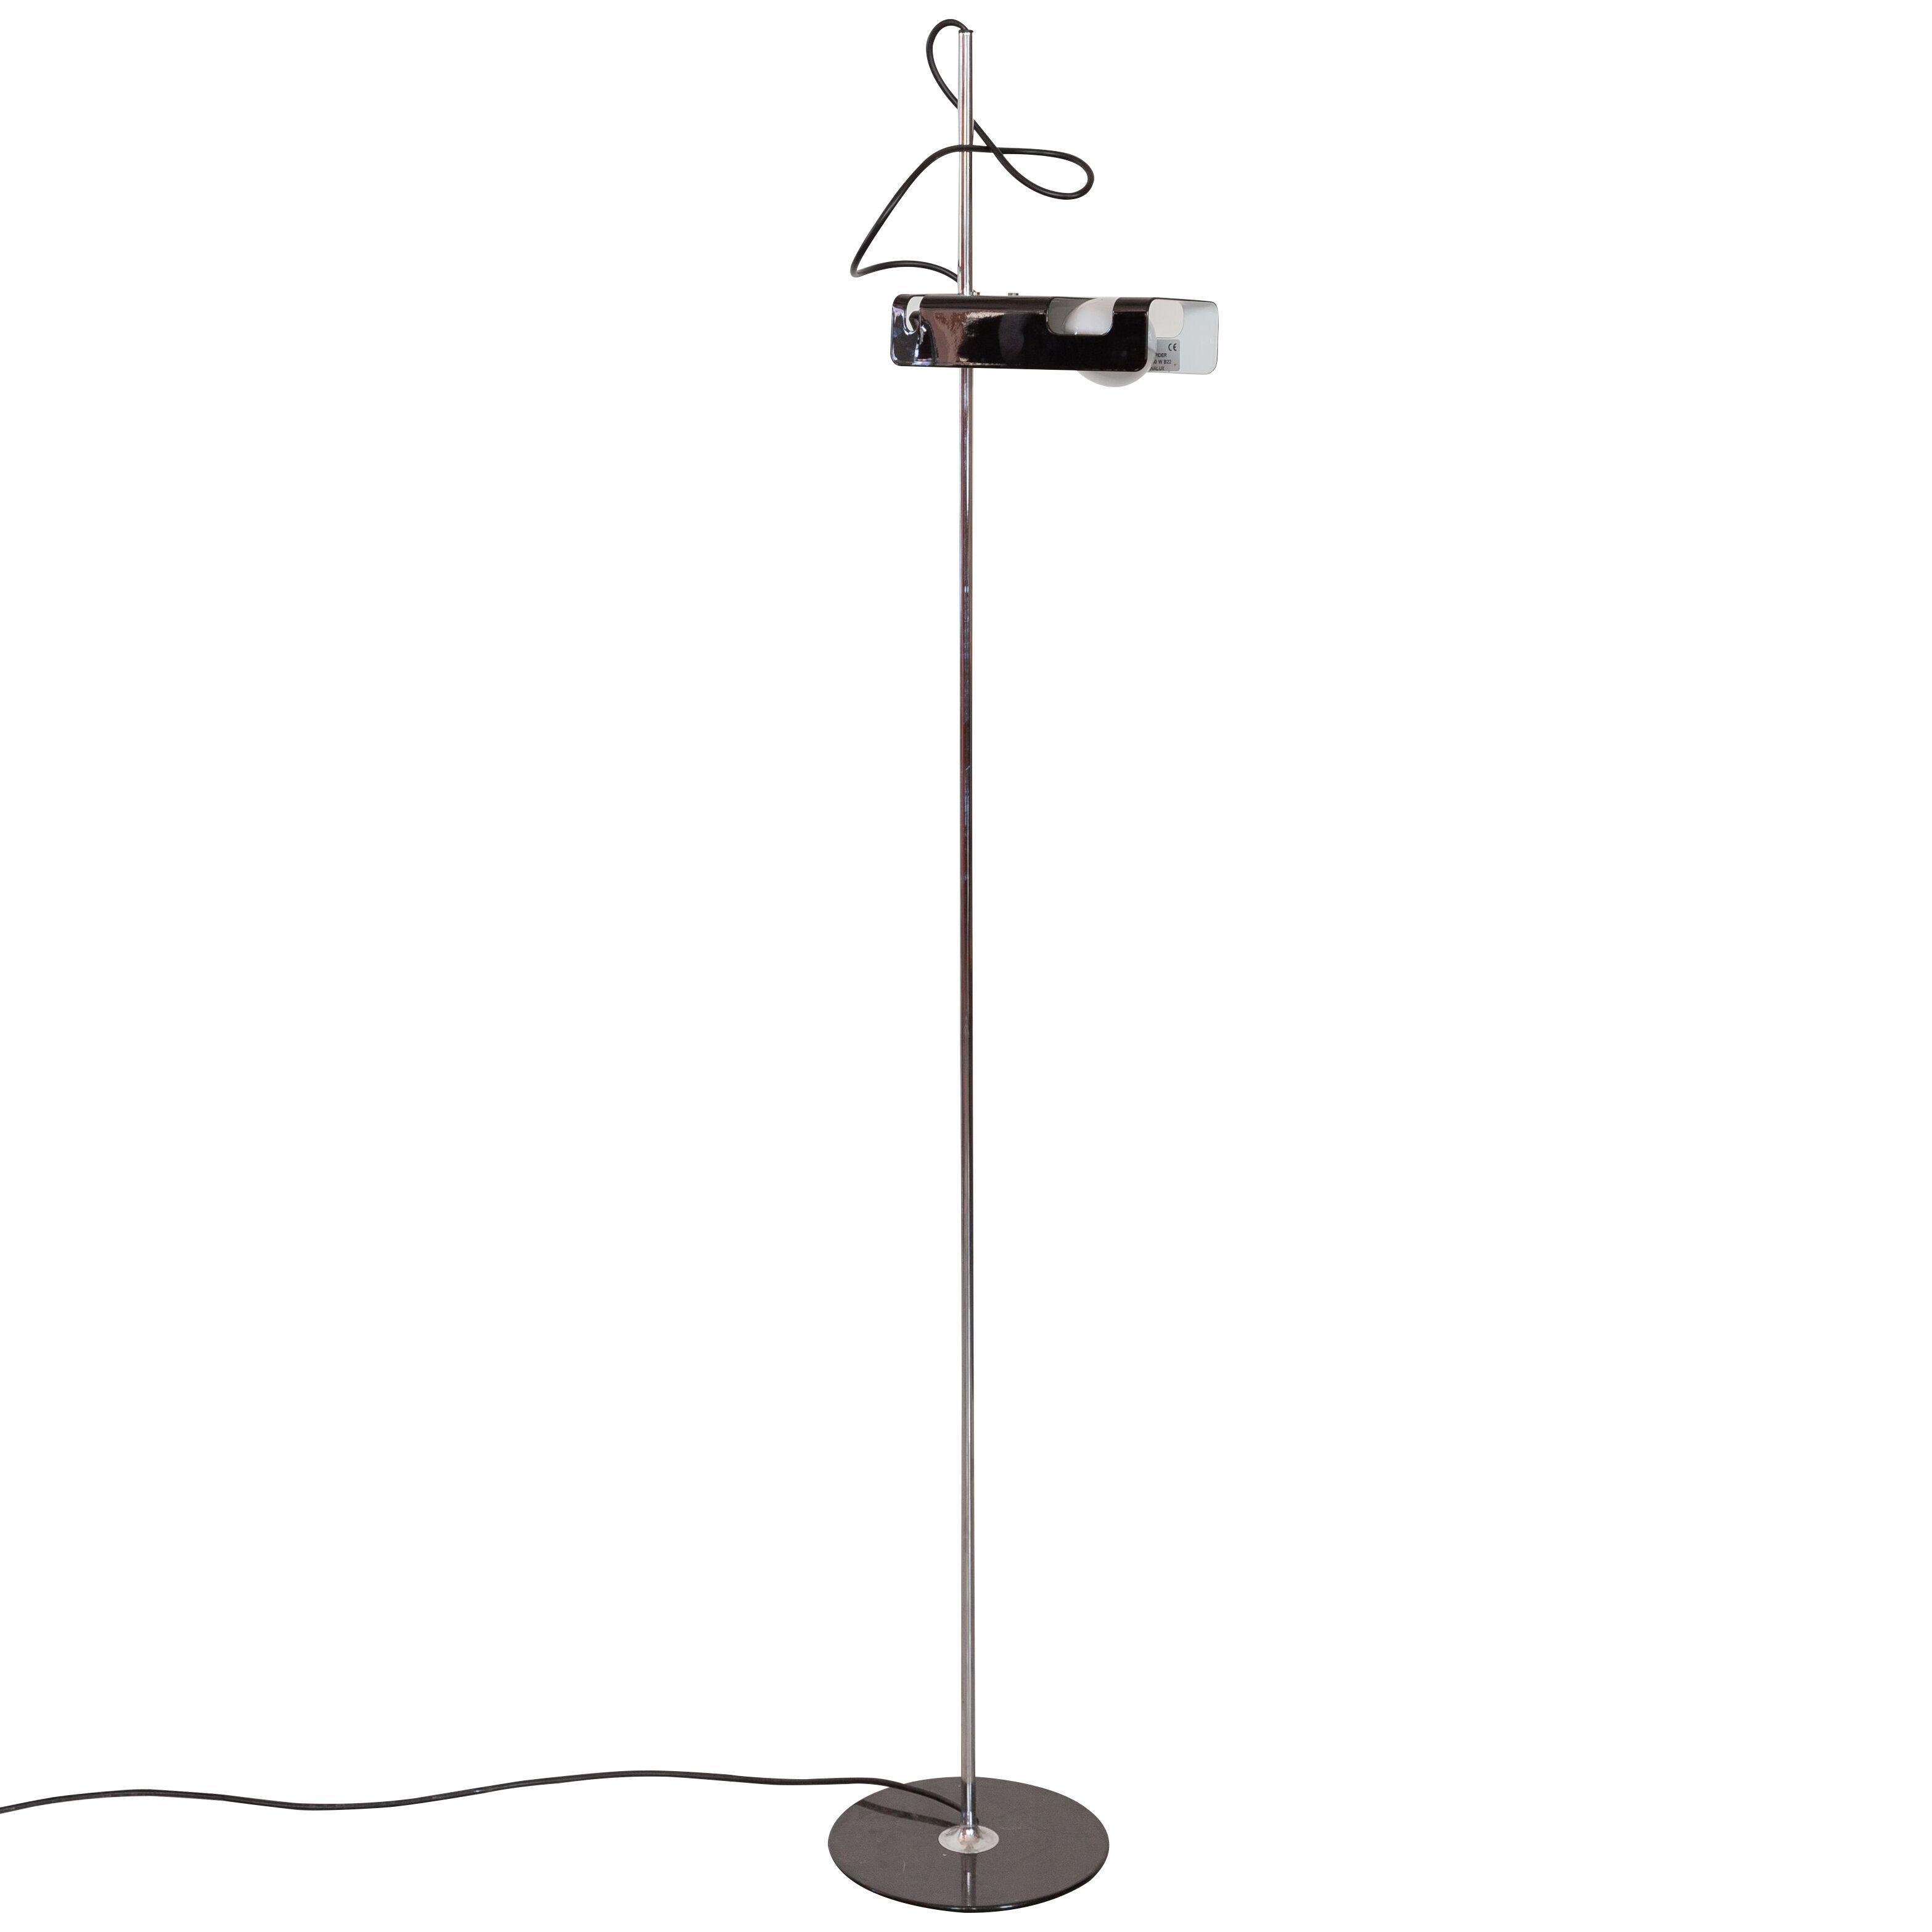 Joe Colombo Model 3319 'Spider' Floor Lamp in Black for Oluce,Italy